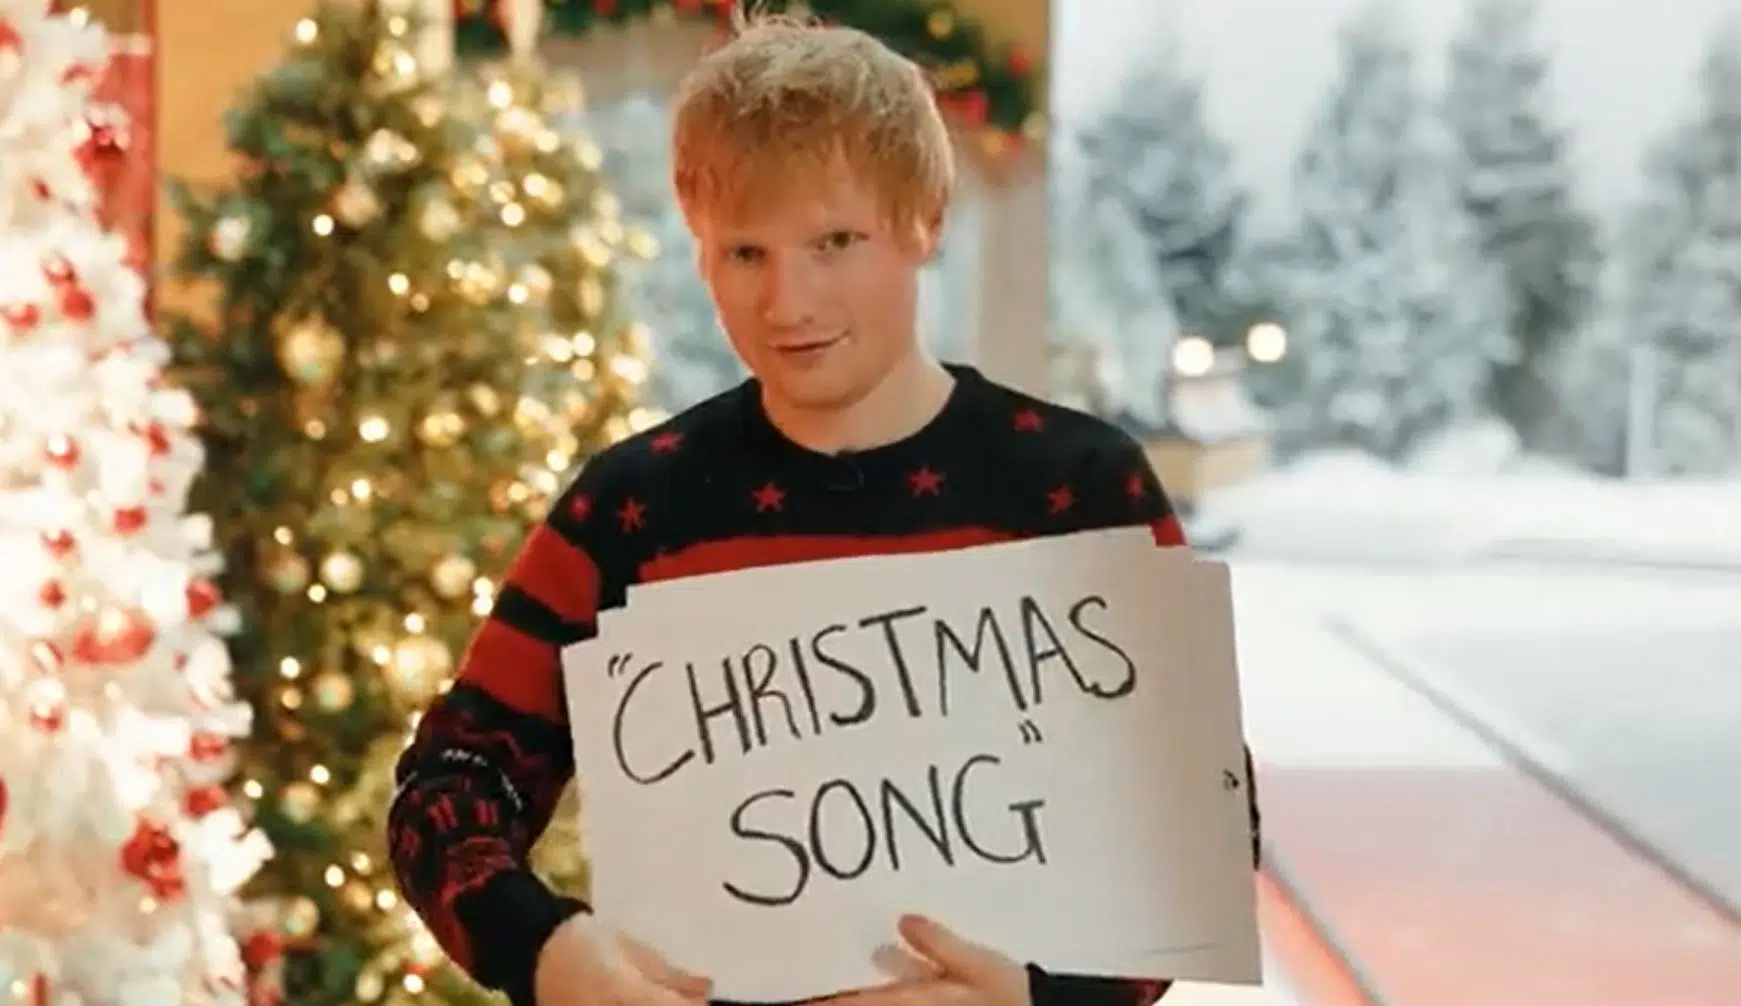 [LISTEN] New Ed Sheeran/Elton John Christmas Music Coming This Week